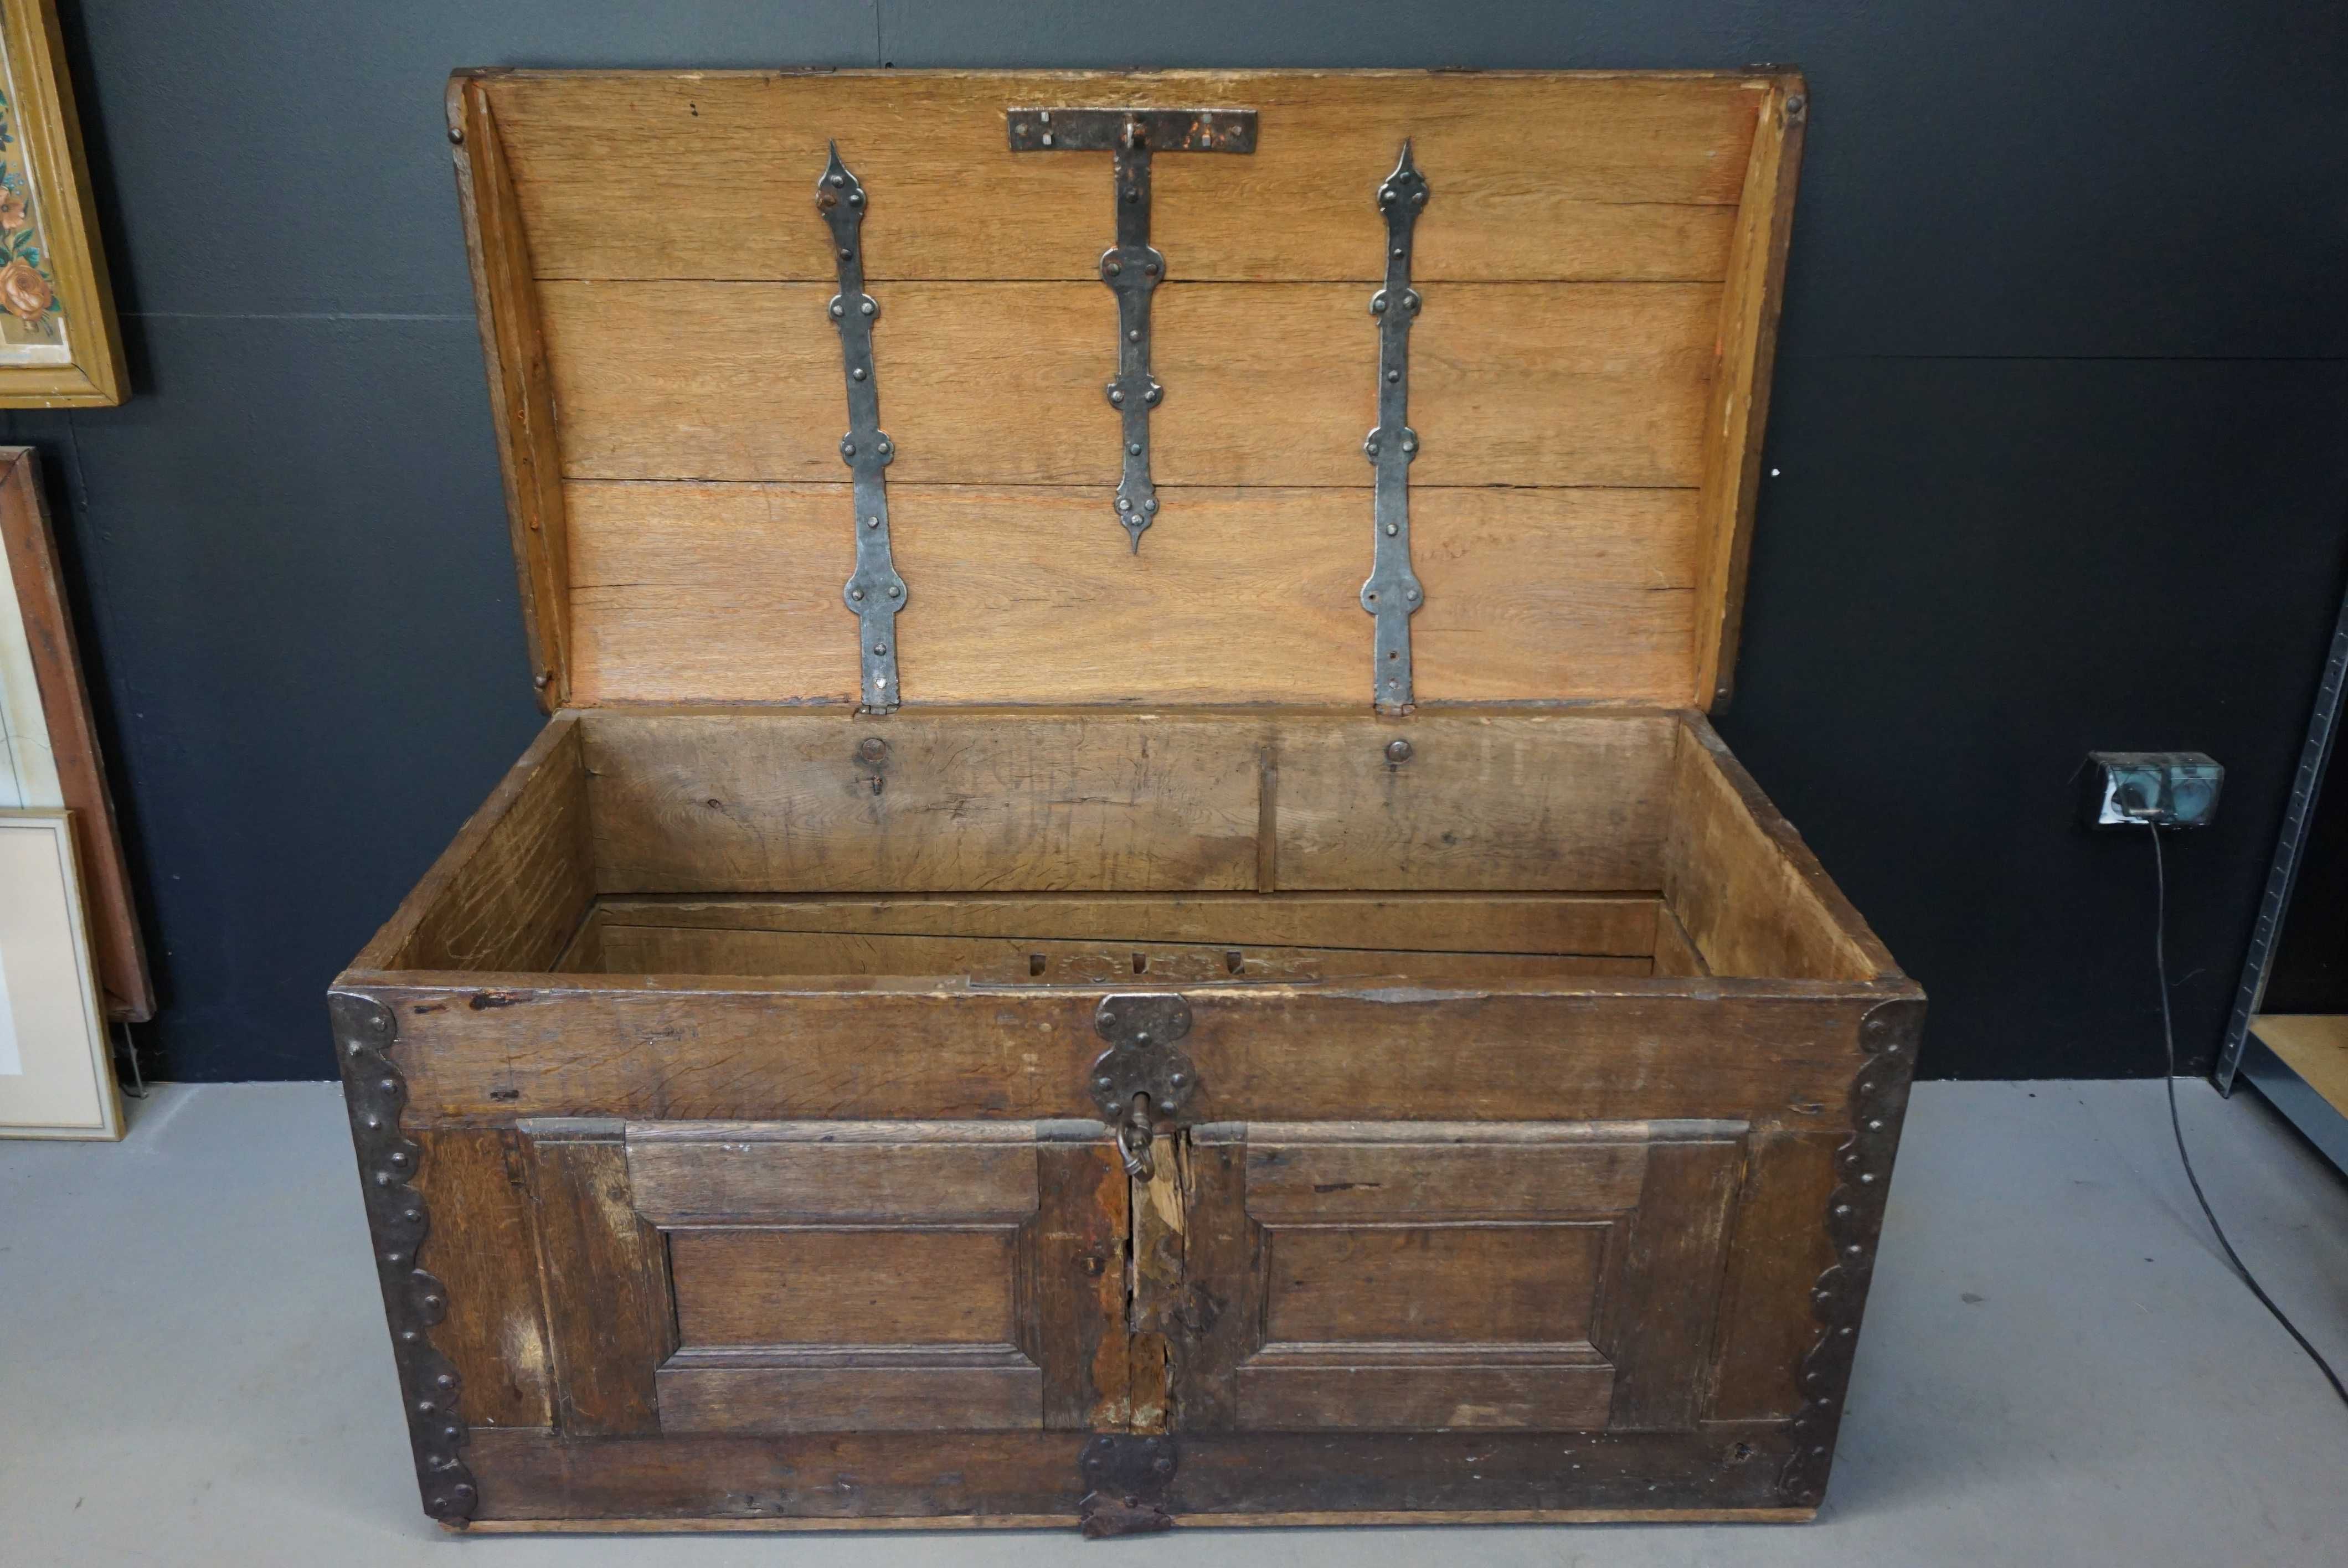 Zabytkowy kufer dębowy skrzynia XIX wiek okuty